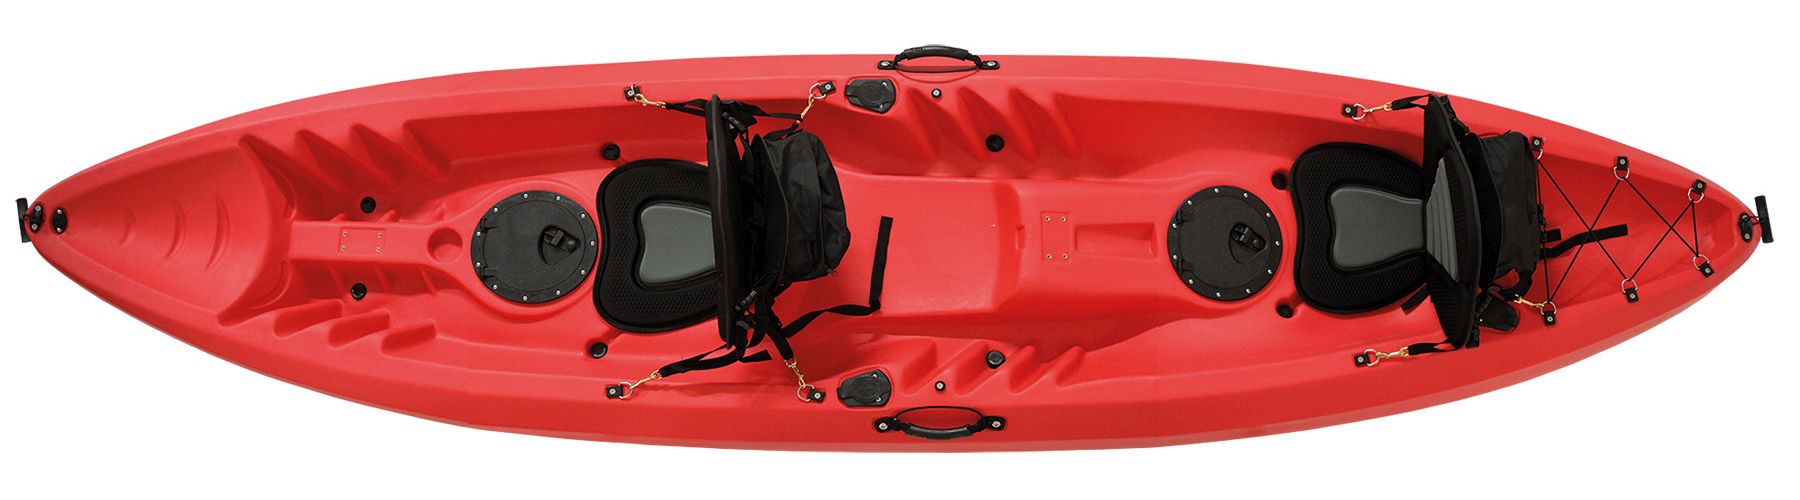 55inch Kayak Paddelleine Angelrute Coiled Cord Holder Kajakfahren Kanufahren Bootfahren Surfzubehör POFET 2pcs 140cm